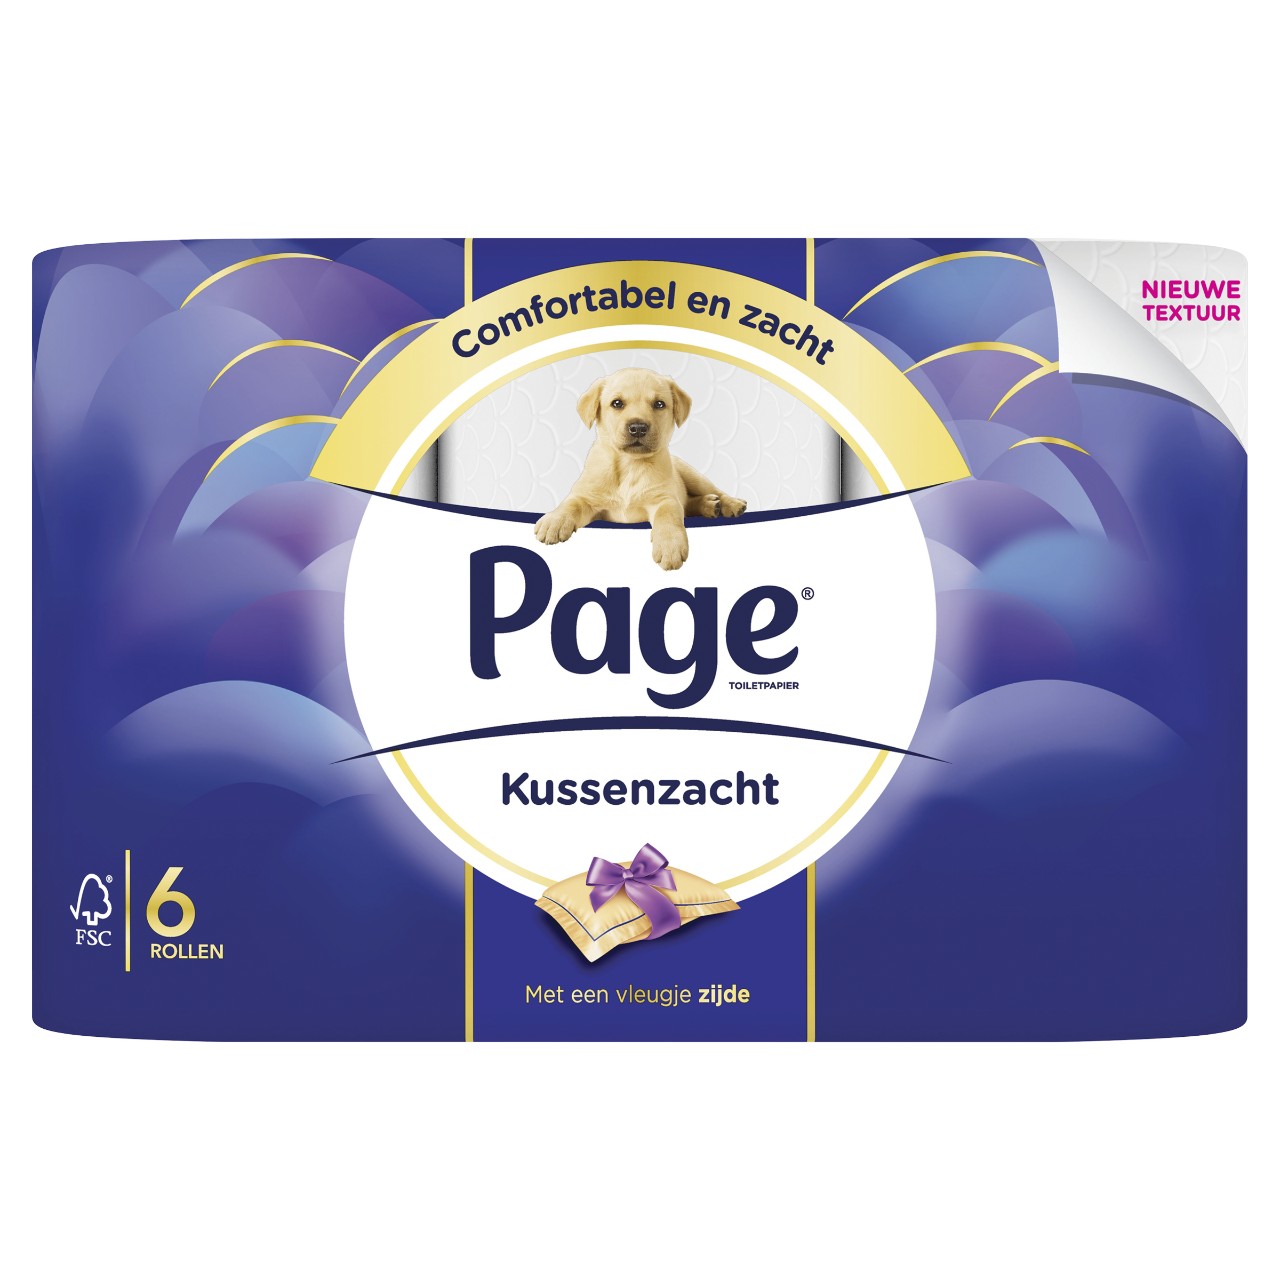 Wanorde Heel Fahrenheit Page Toiletpapier kussenzacht 7 pakken x 6 rollen | Sligro.nl